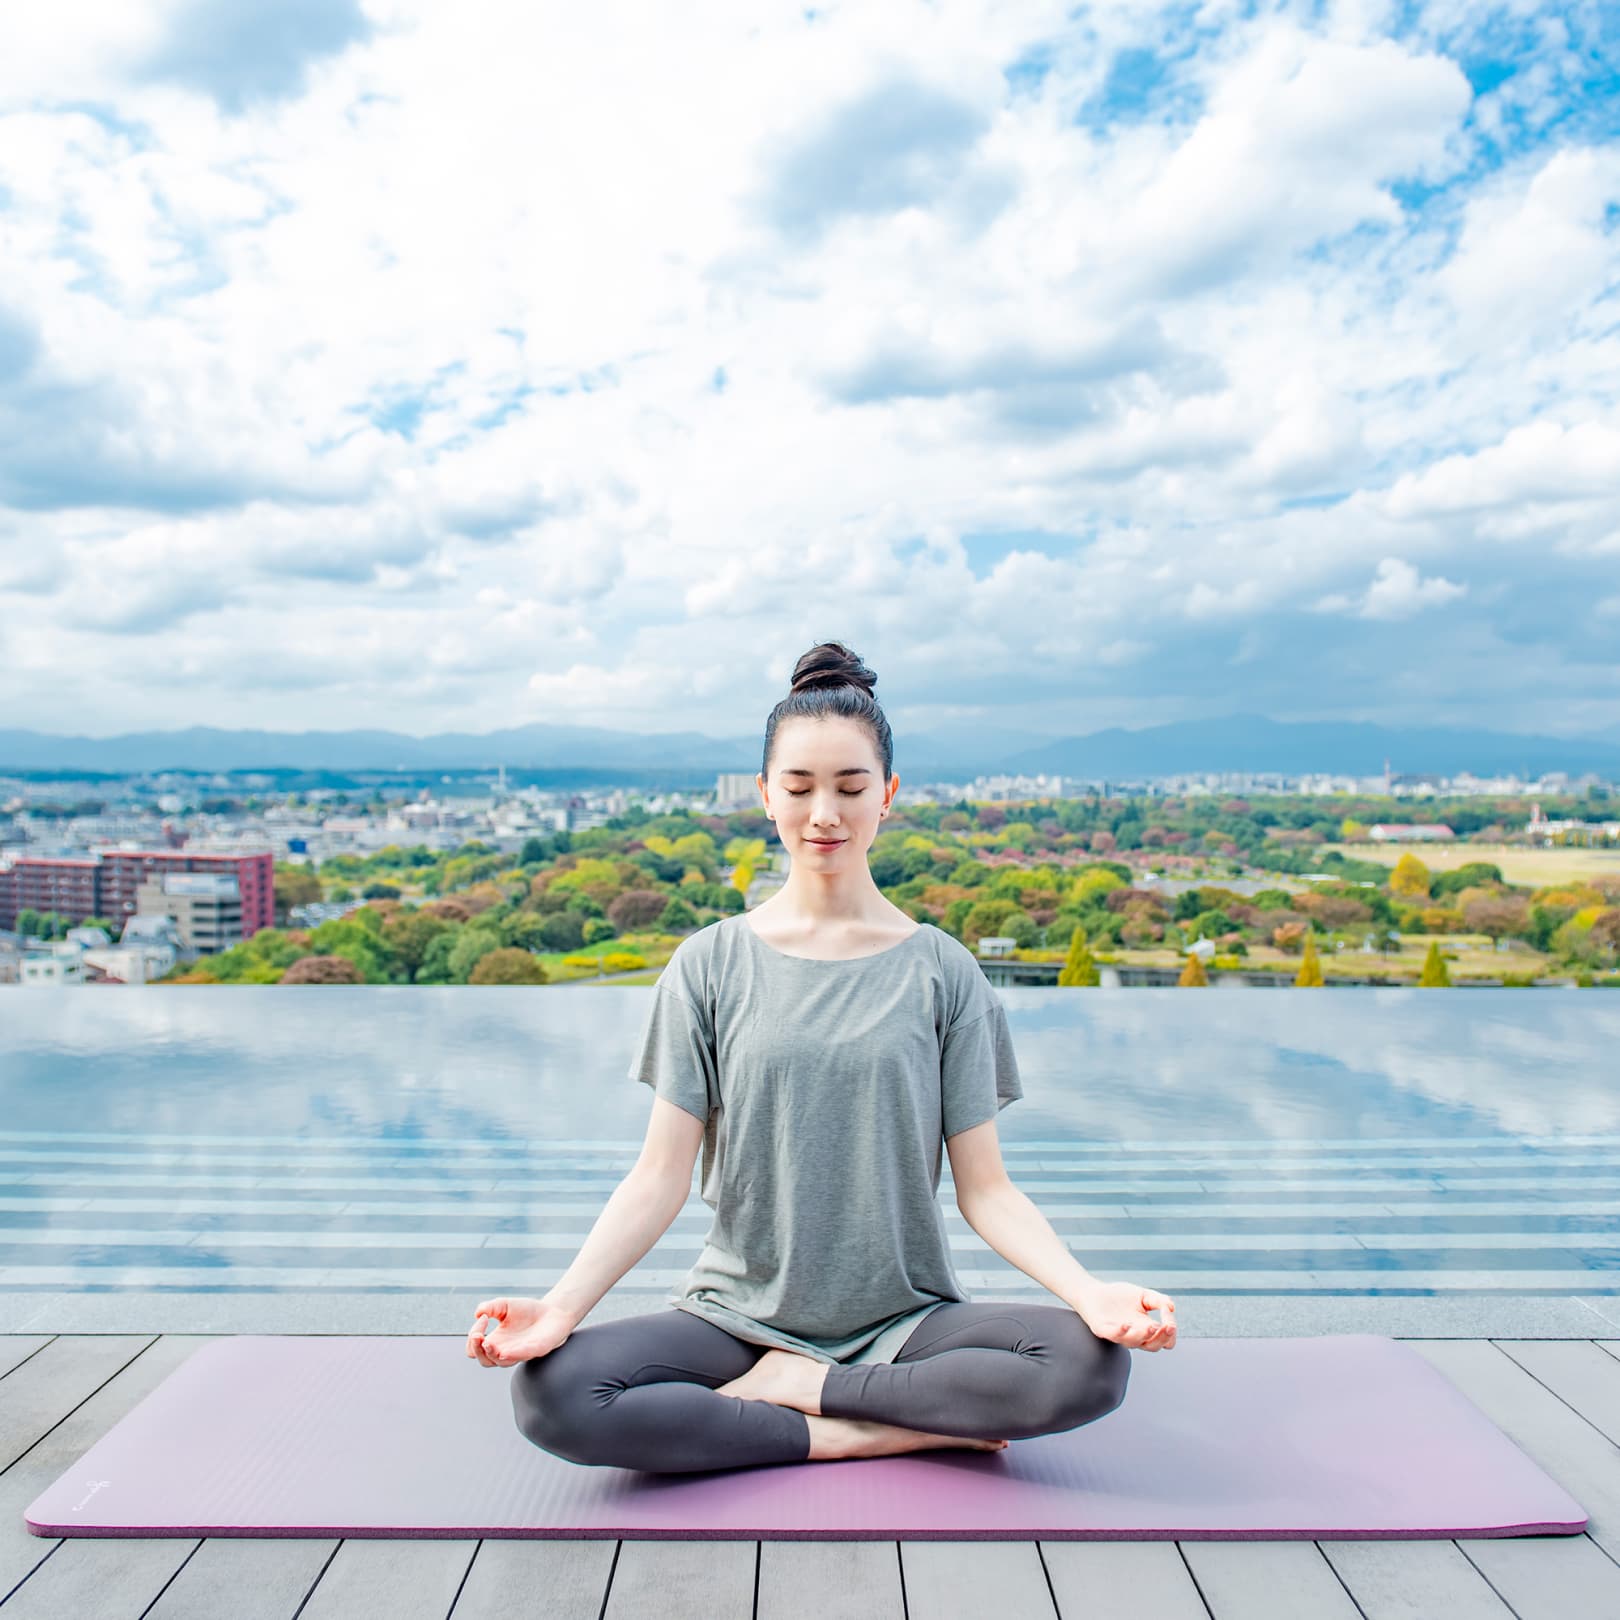 Early Morning Yoga Exercises and Meditation (Mindfulness)